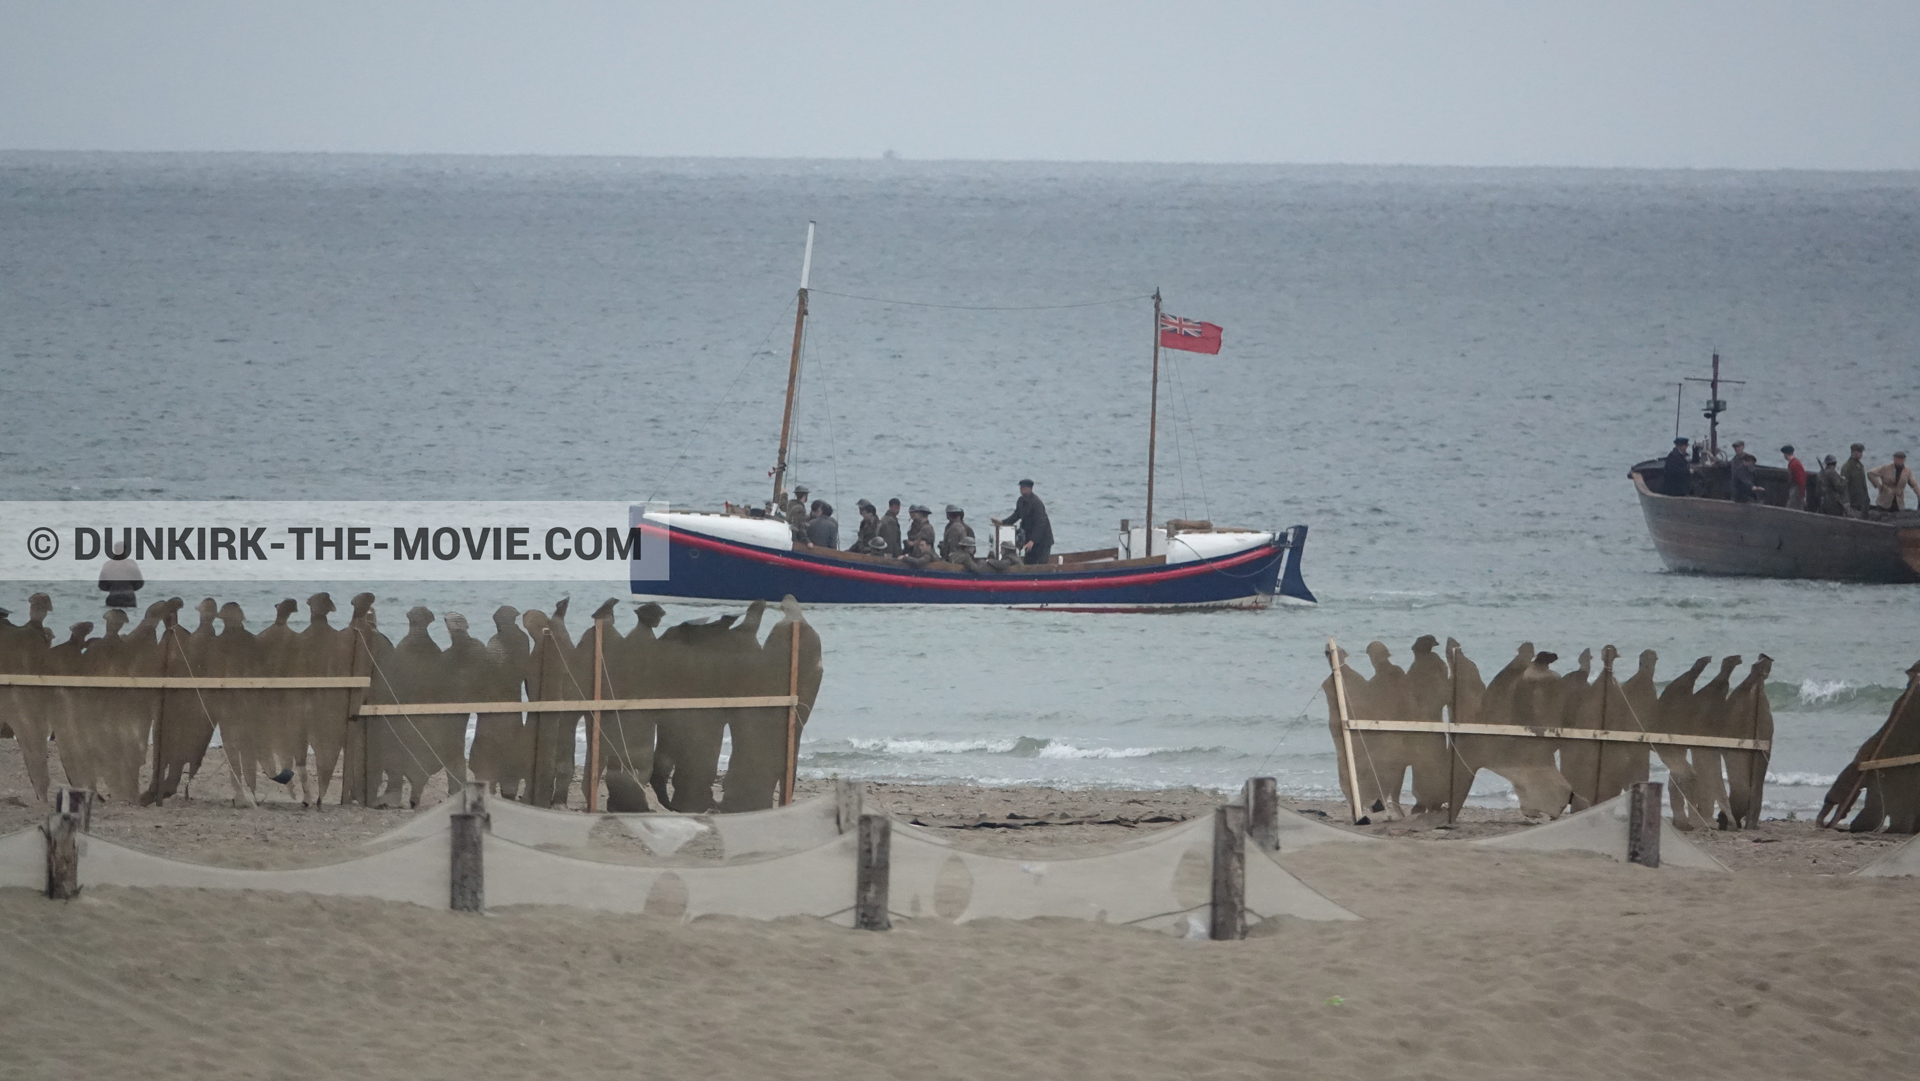 Fotos con barco, decoración, extras, playa, del bote salvavidas Henry Finlay,  durante el rodaje de la película Dunkerque de Nolan